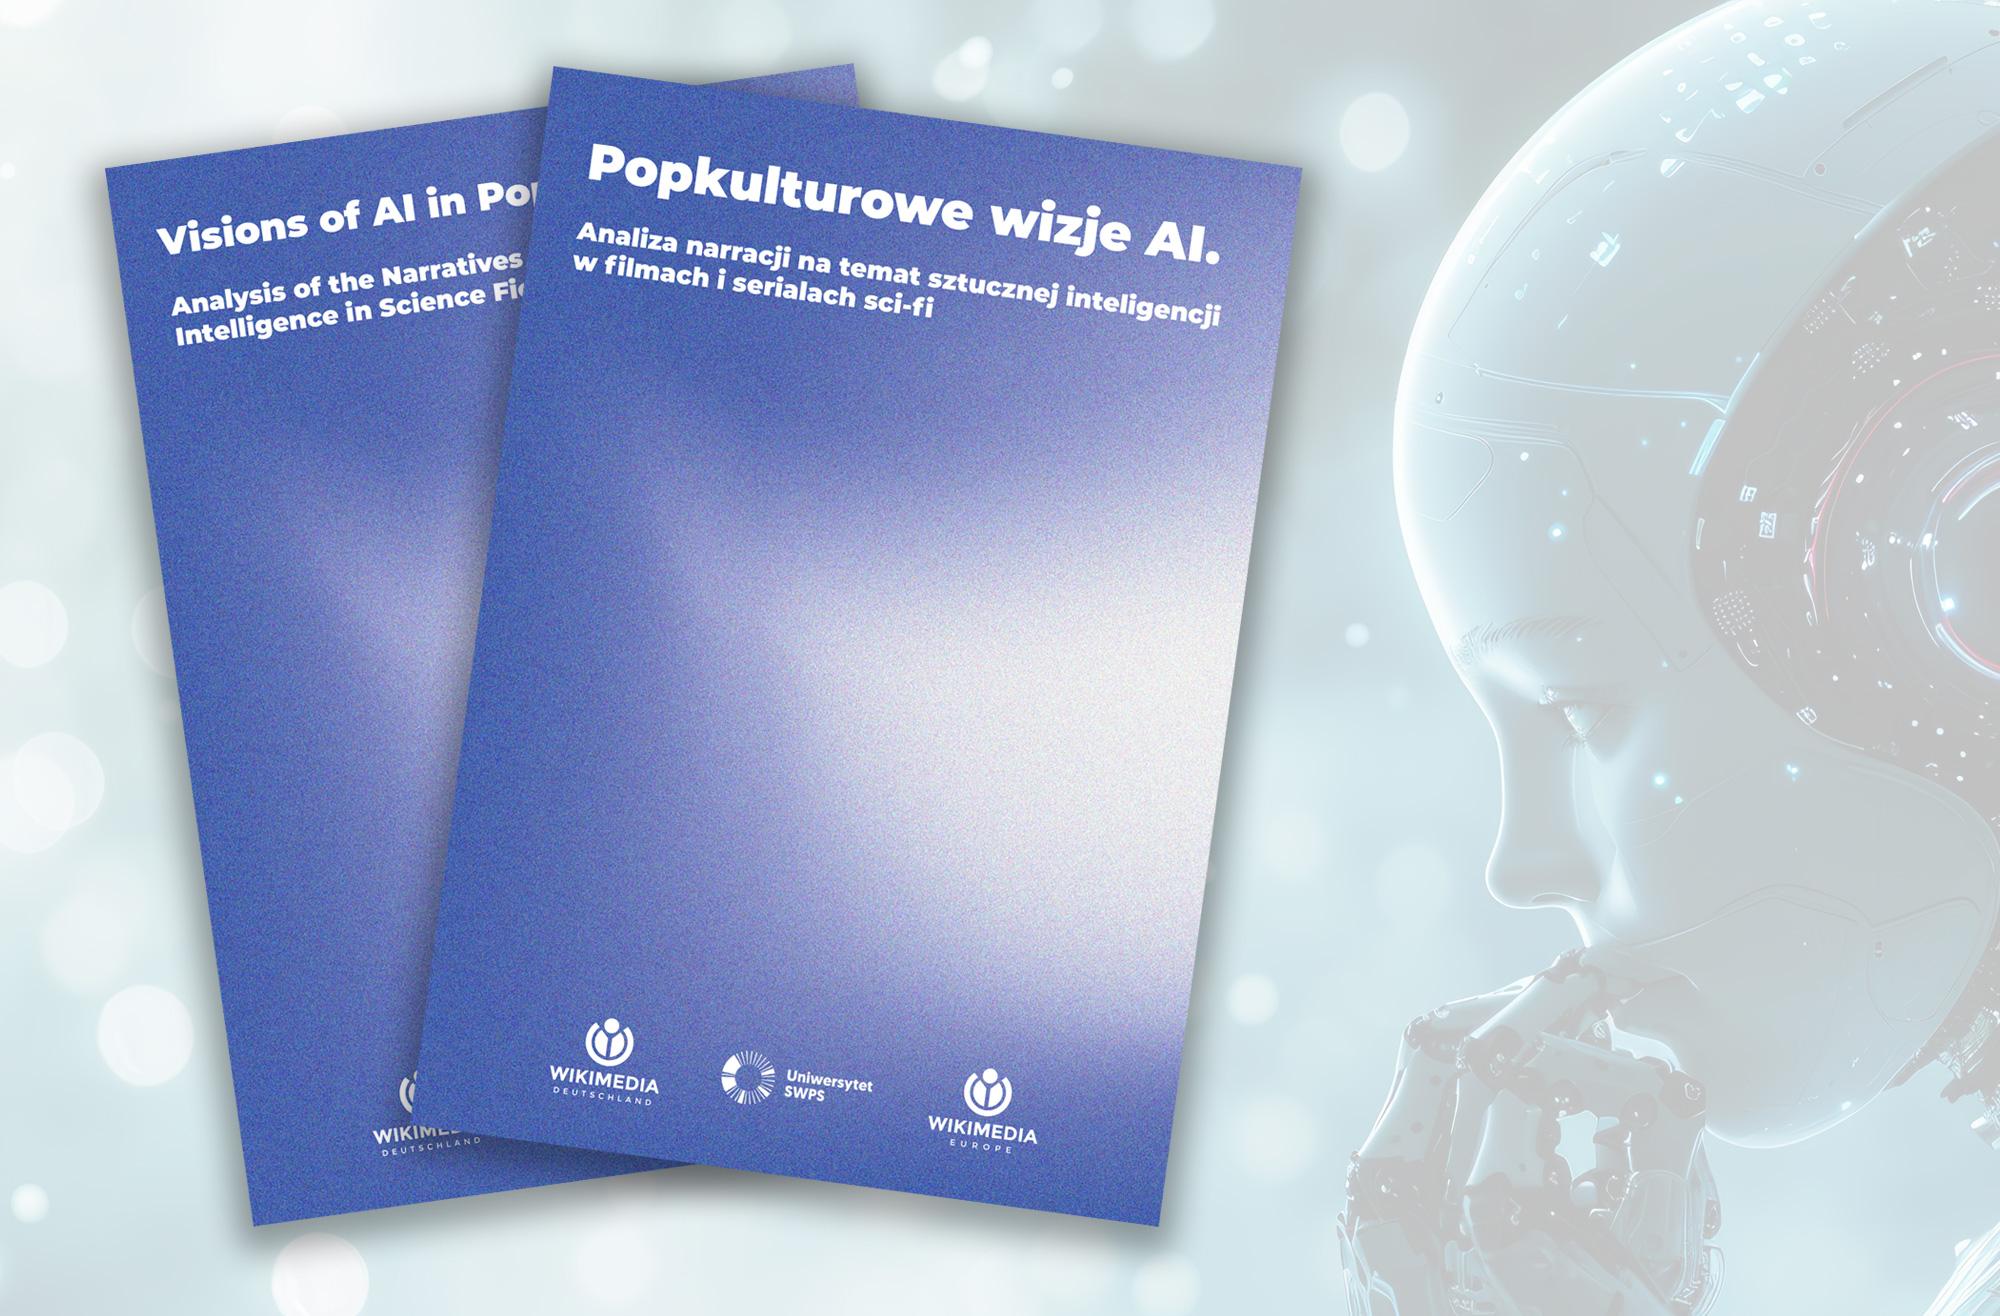 Okładka raportu "Popkulturowe wizje AI" opracowanego przez studentki i studentów School of Ideas Uniwersytetu SWPS pod kierownictwem doktora Kuby Piwowara.